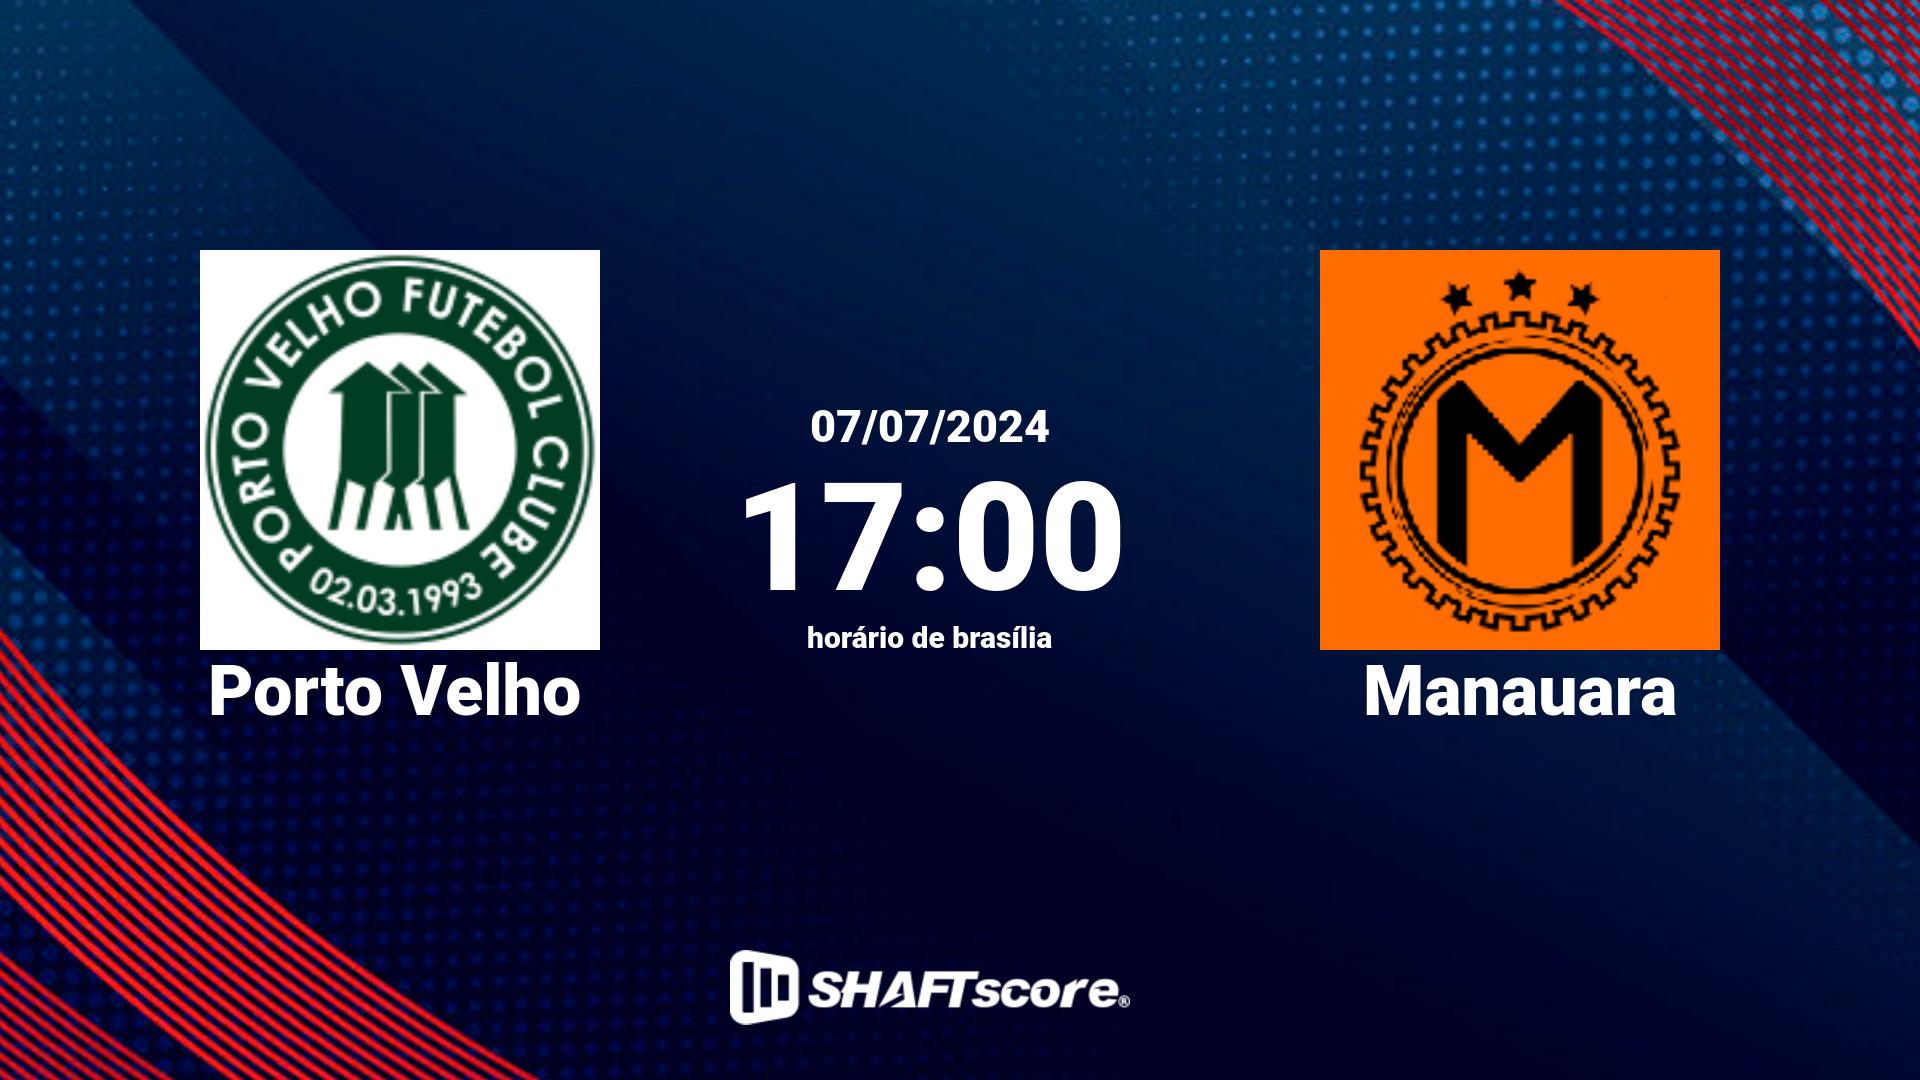 Estatísticas do jogo Porto Velho vs Manauara 07.07 17:00